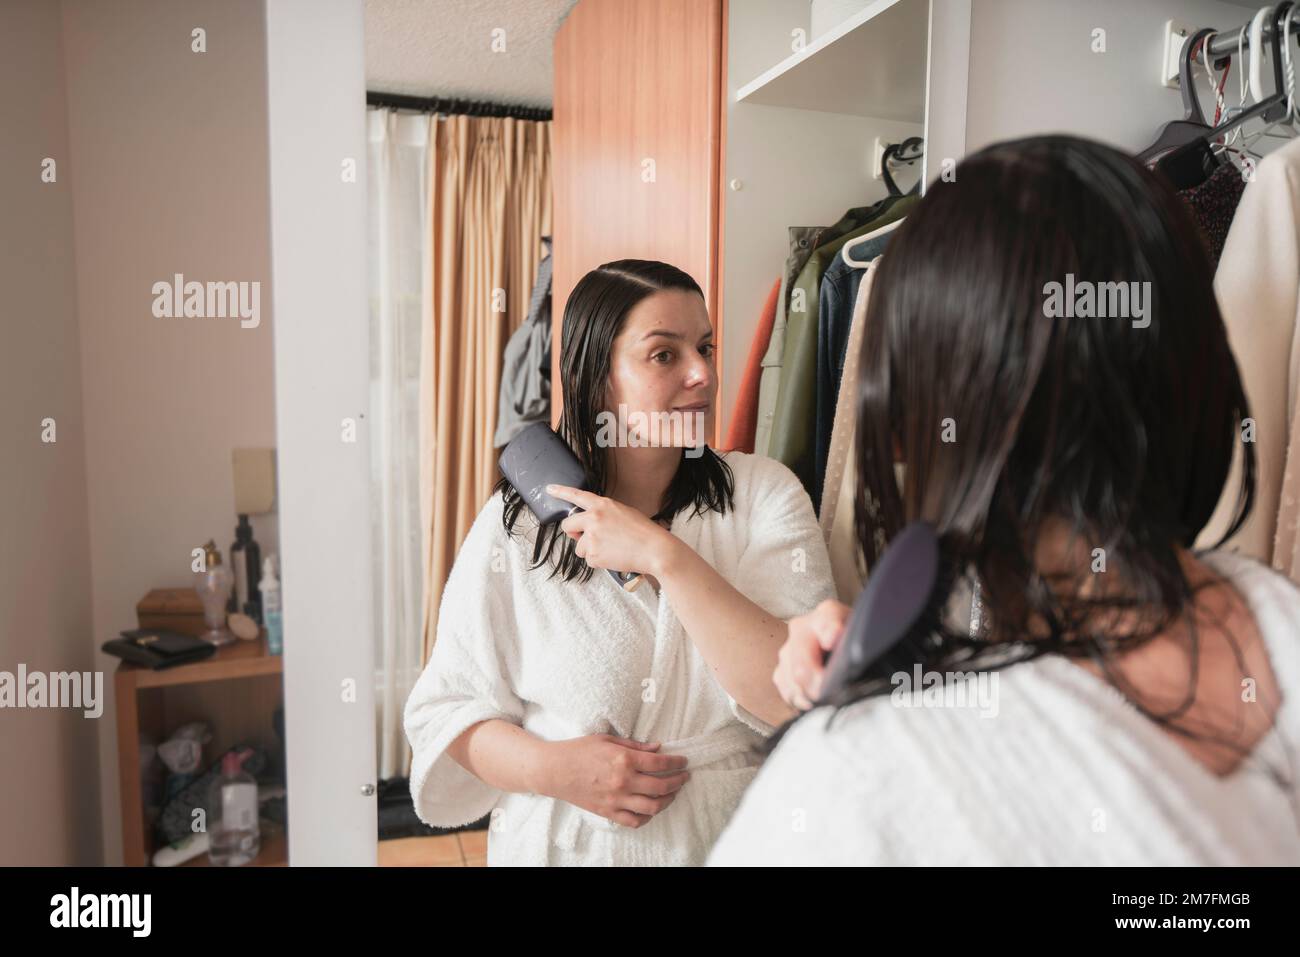 Wunderschöne hispanische Frau in einem weißen Bademantel, die ihr Haar mit einer Bürste vor dem Spiegel kämmt, an ihrer Schranktür in ihrem Schlafzimmer Stockfoto